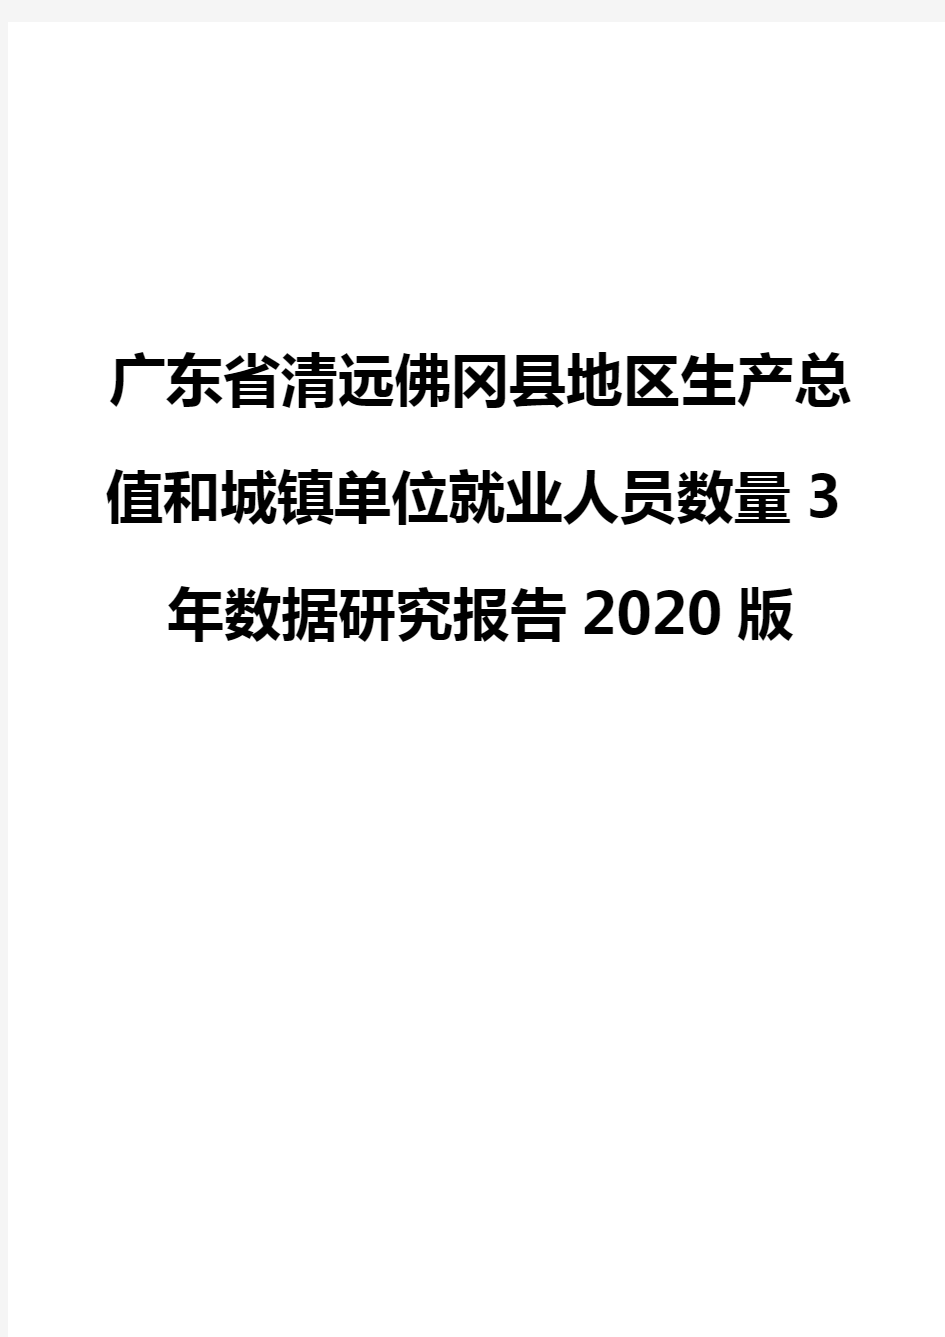 广东省清远佛冈县地区生产总值和城镇单位就业人员数量3年数据研究报告2020版